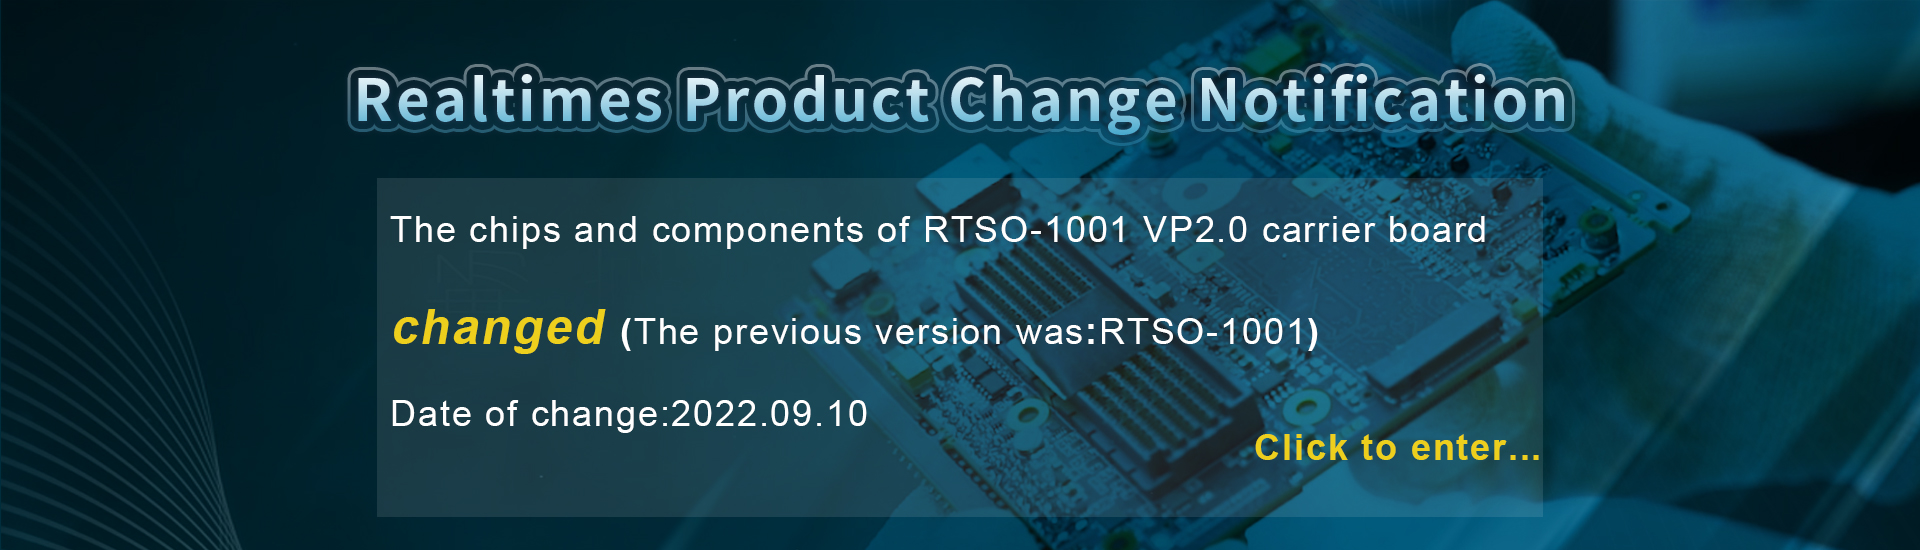 RTSO-1001 Product Change Notification